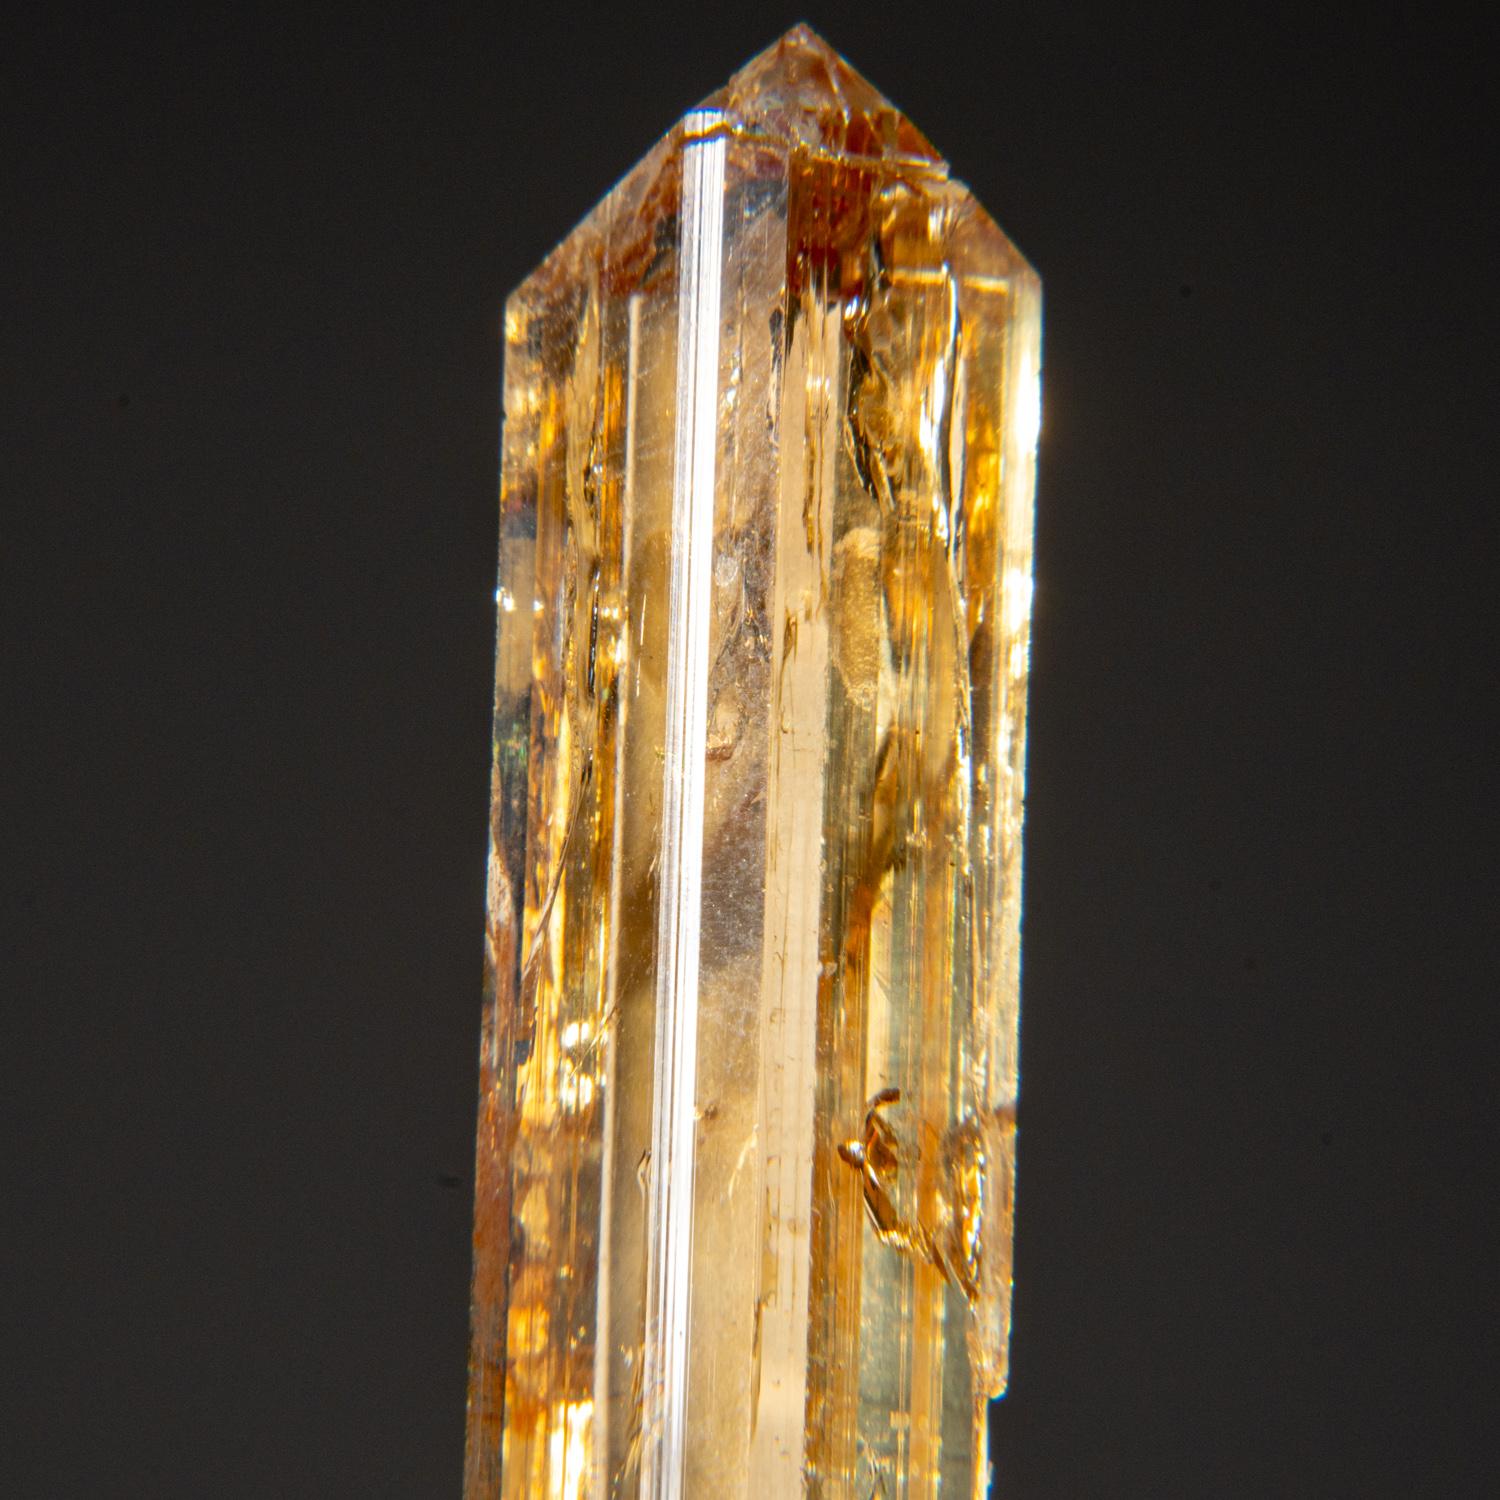 De Kunar, Afghanistan

Grand cristal unique de Topaze transparente de couleur sherry avec des terminaisons pinacoïdes basales complexes et nettes. Le cristal est bien formé avec des faces à l'éclat vitreux.

 

Poids : 15,2 grammes, Taille : 0,5 x